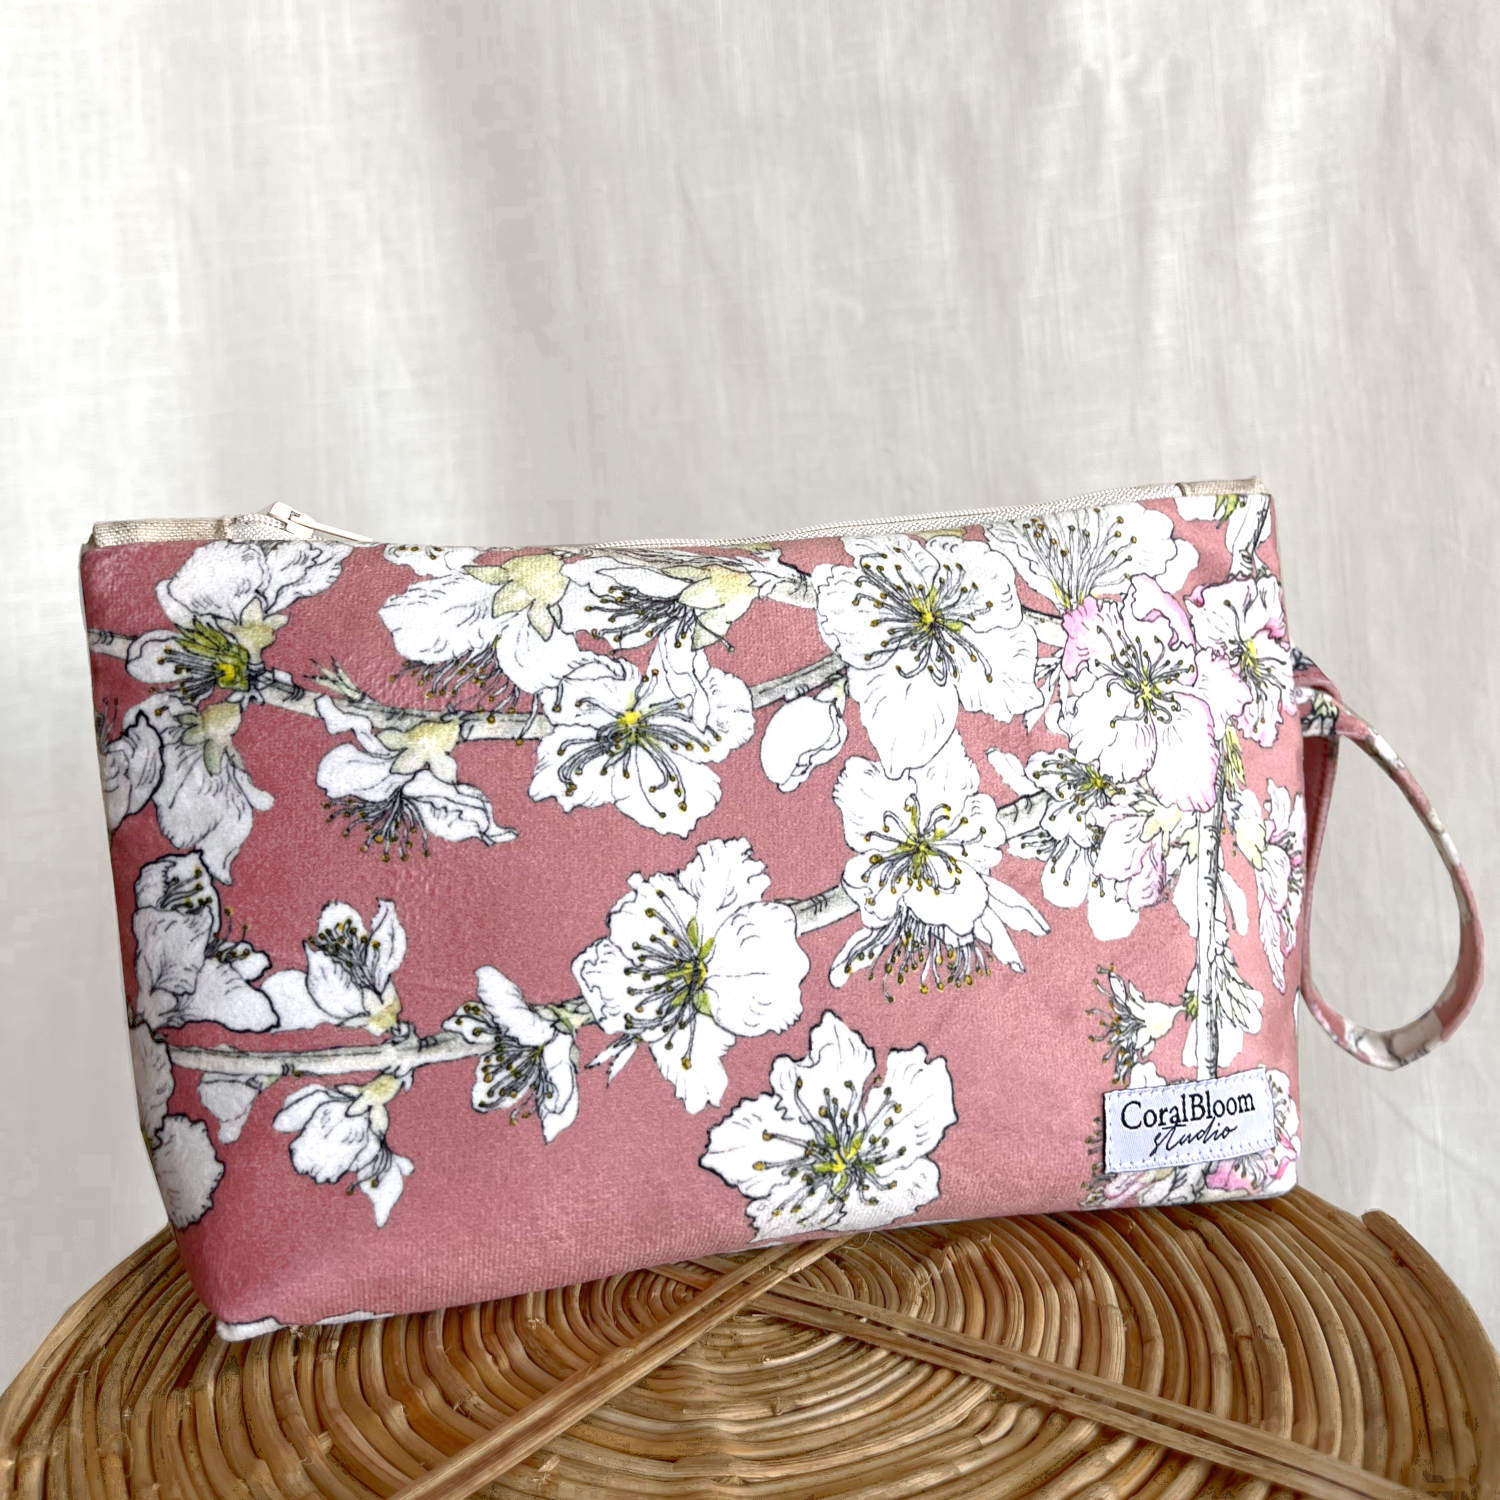 CoralBloom Studio Clutch Bag Accessories Blossoms on pink velvet